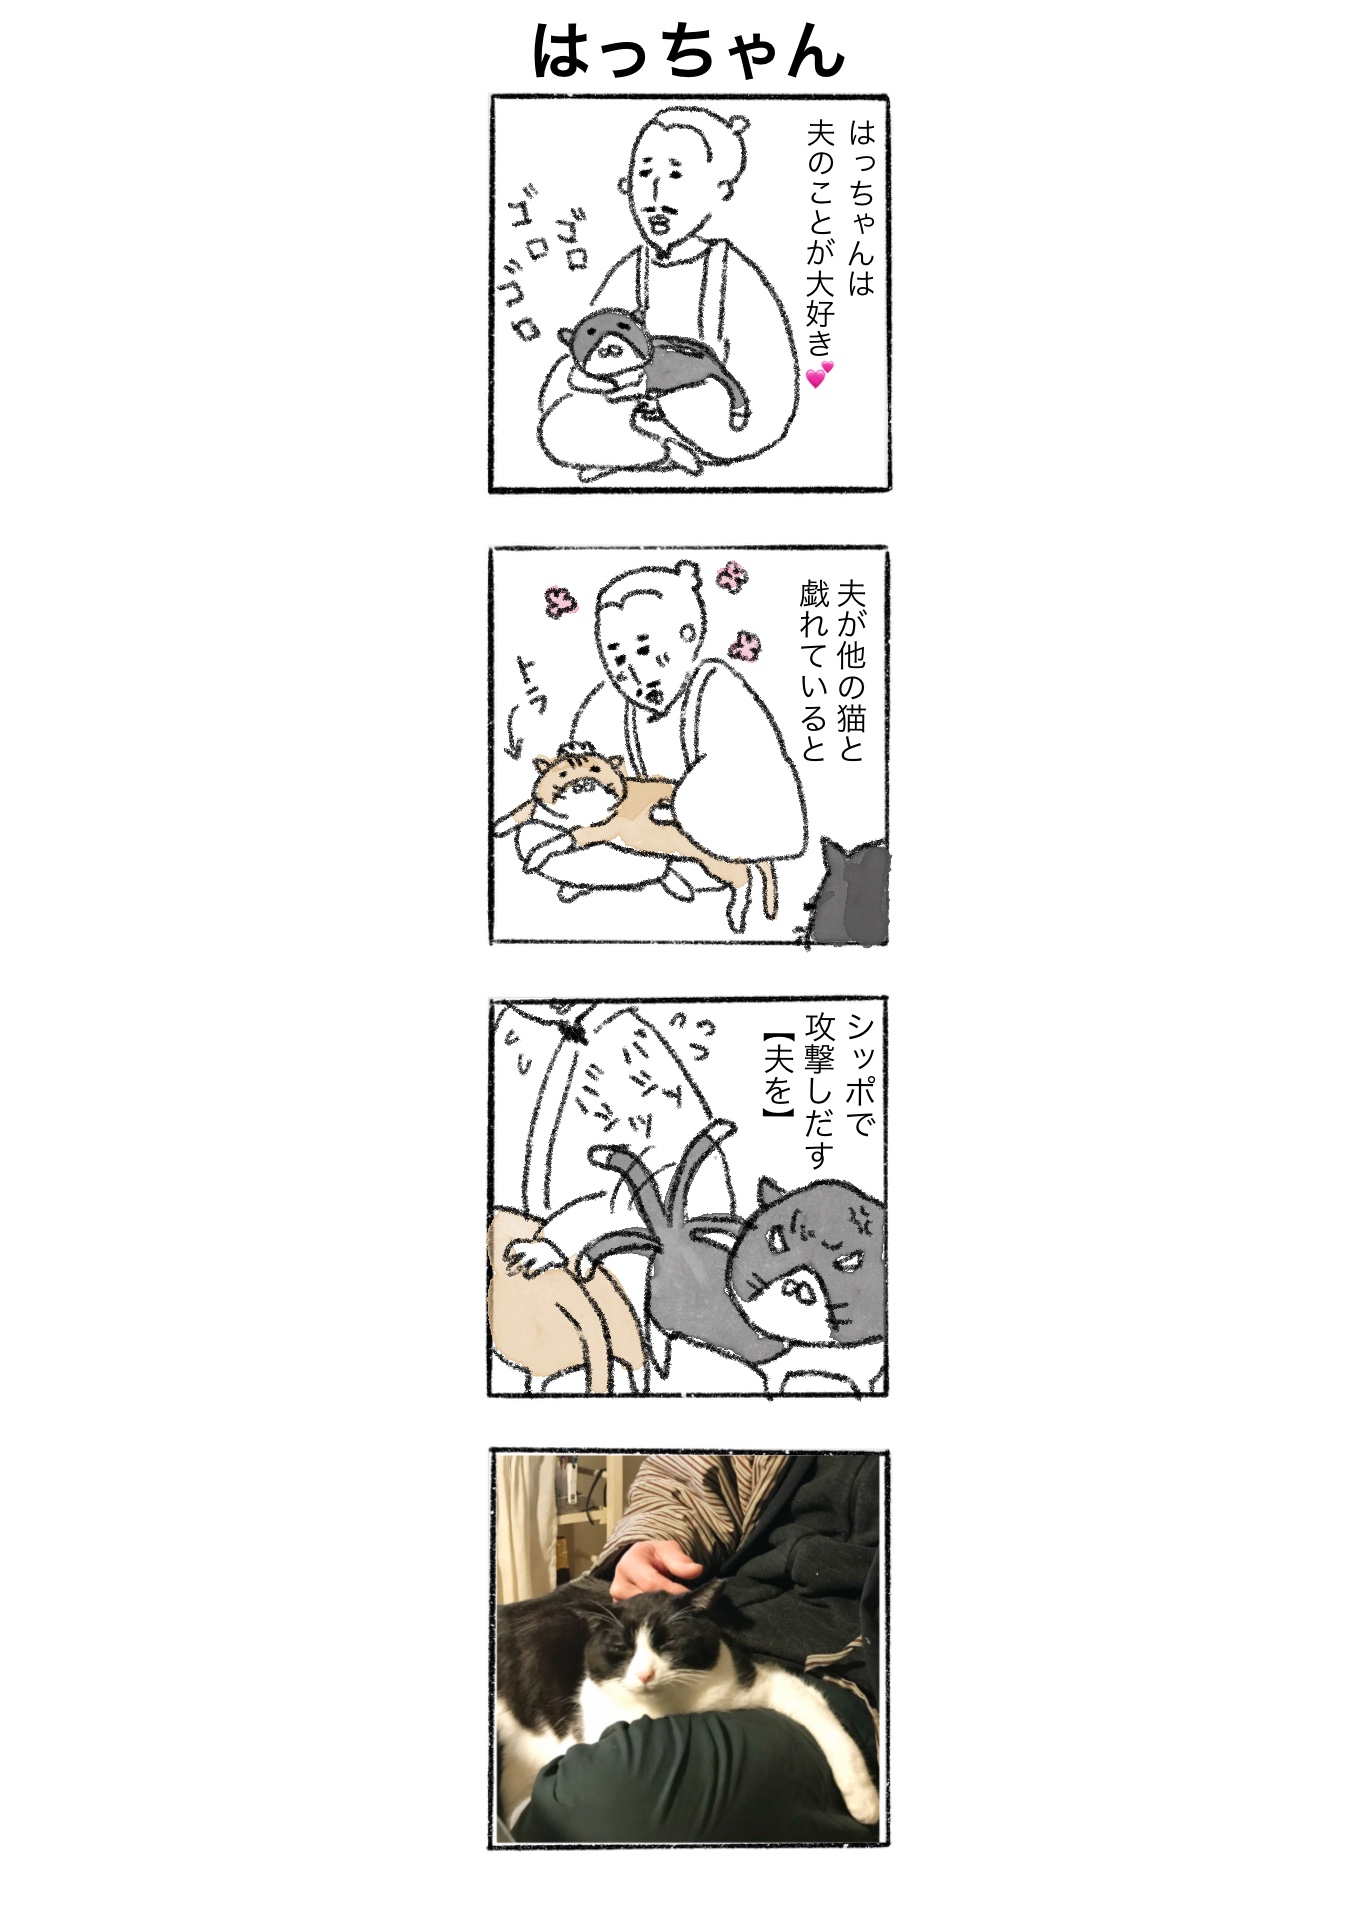 【ゆる猫4コマ#003】嫉妬に狂うはっちゃん